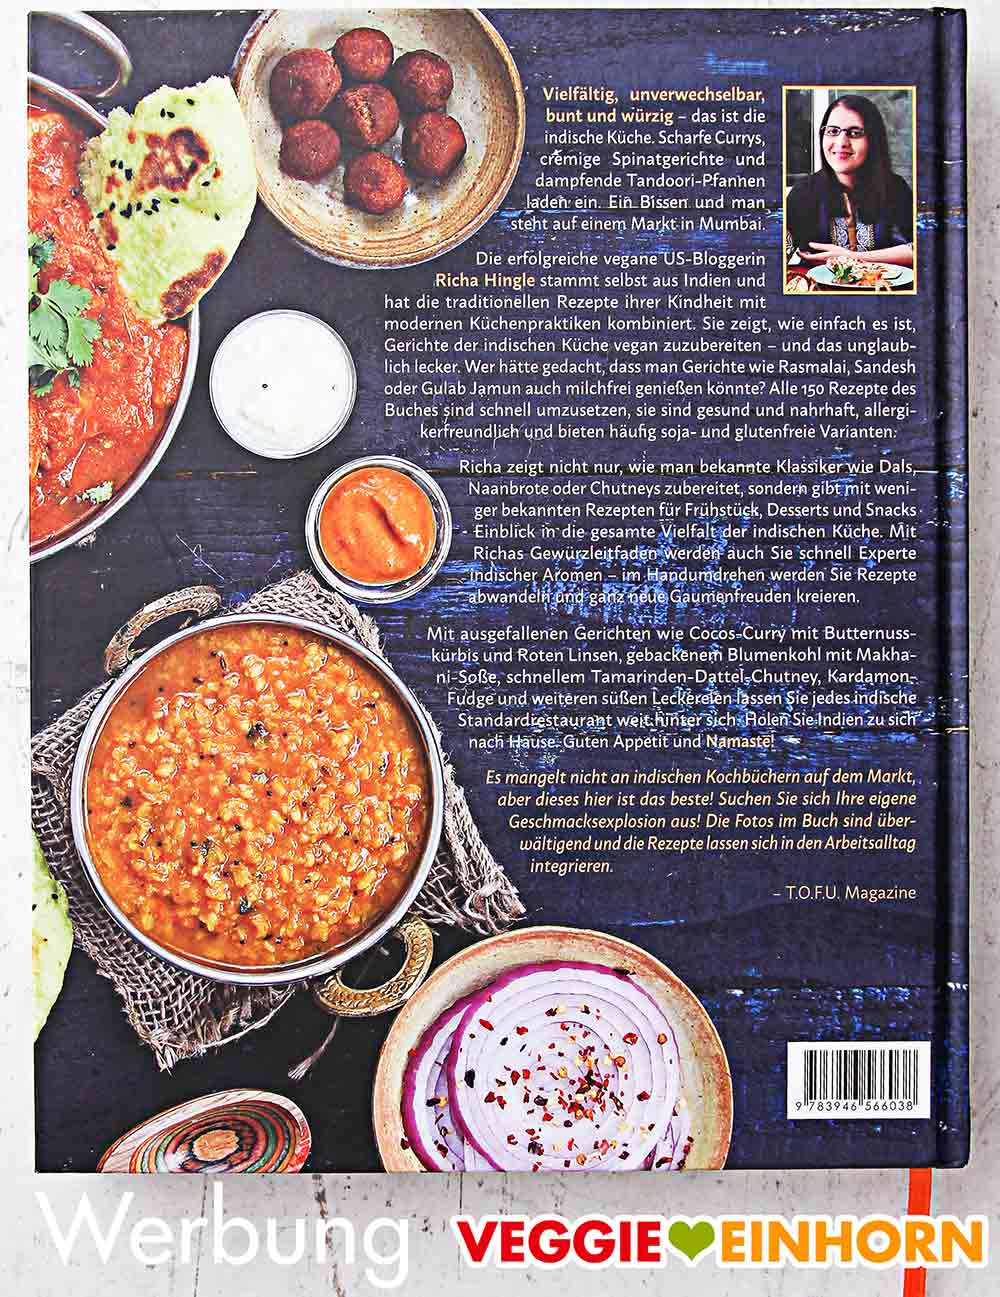 Rückseite des Kochbuchs "Vegane Indische Küche" 